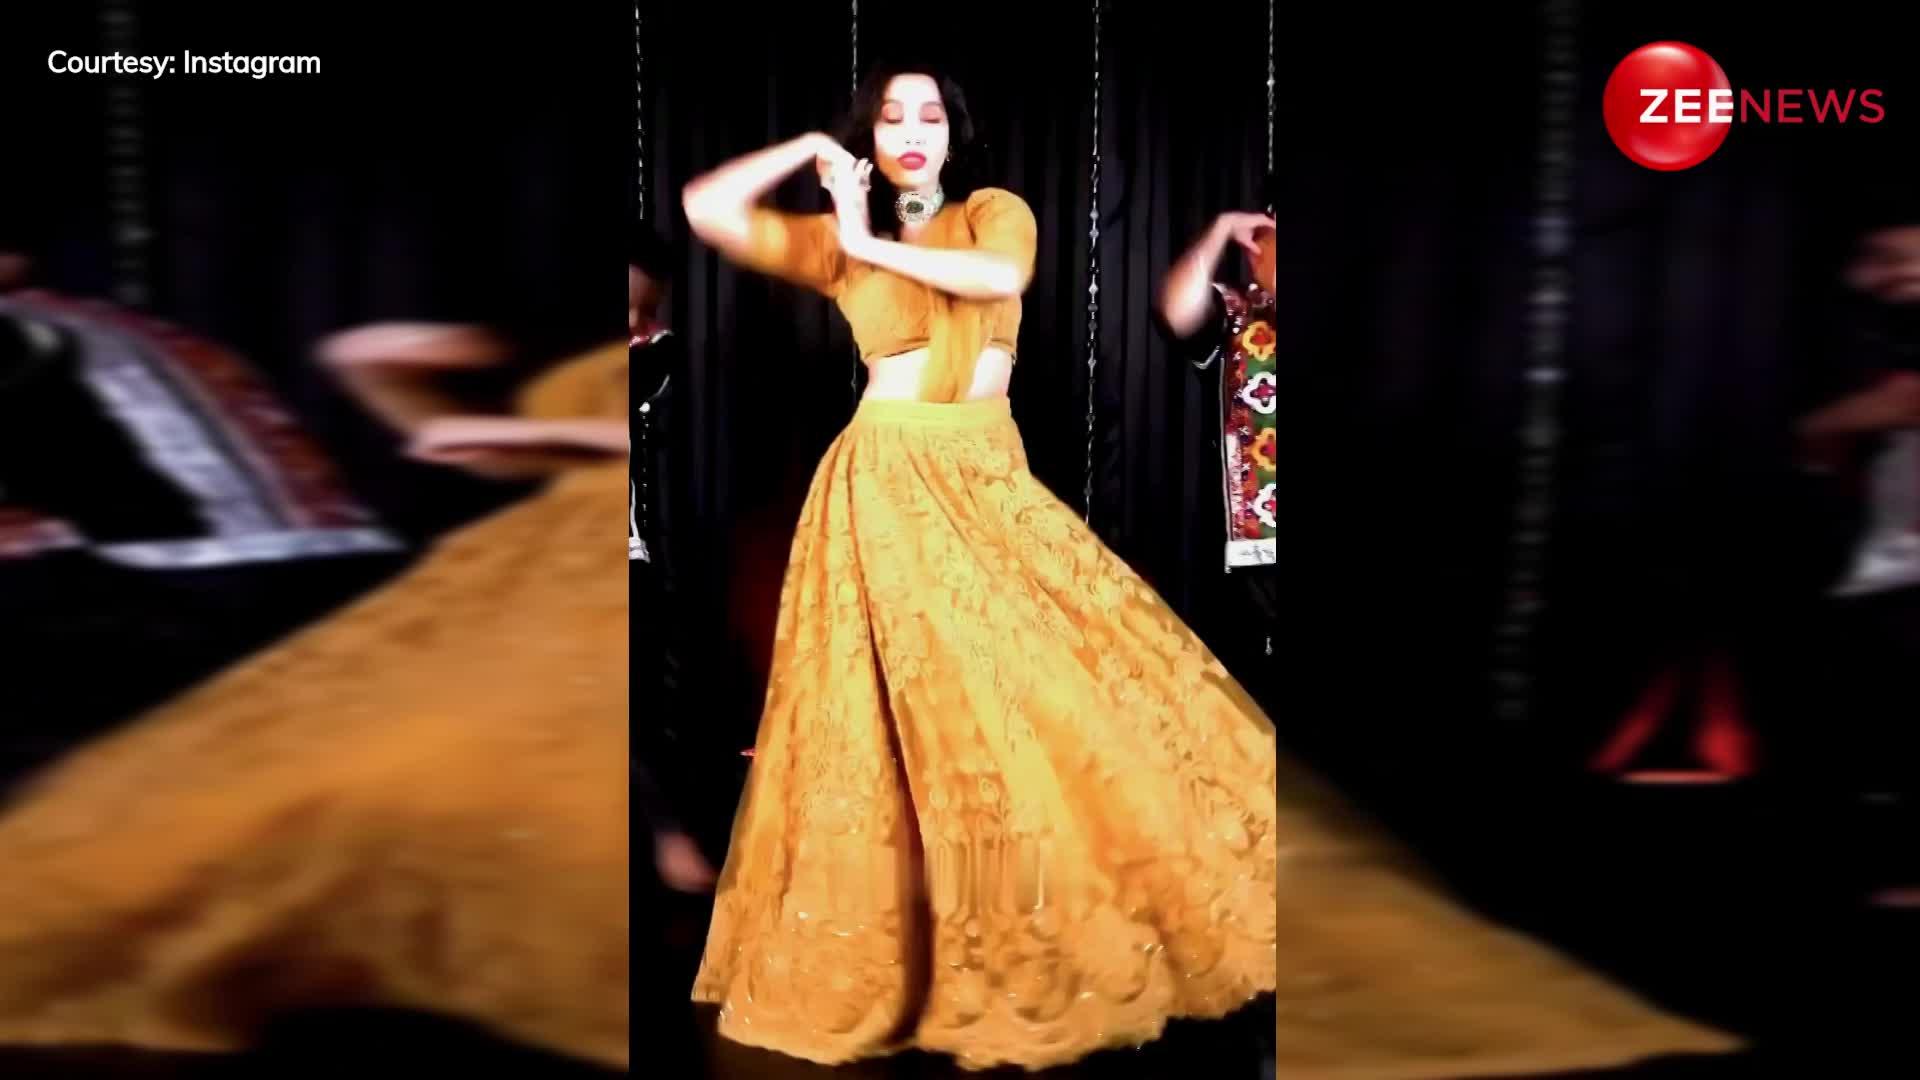 एक्ट्रेस Nora Fatehi ने लेहेंगा पहन बॉलीवुड गाने पर दिखाया ऐसा डांस, देख आहें भरने लगे फैंस